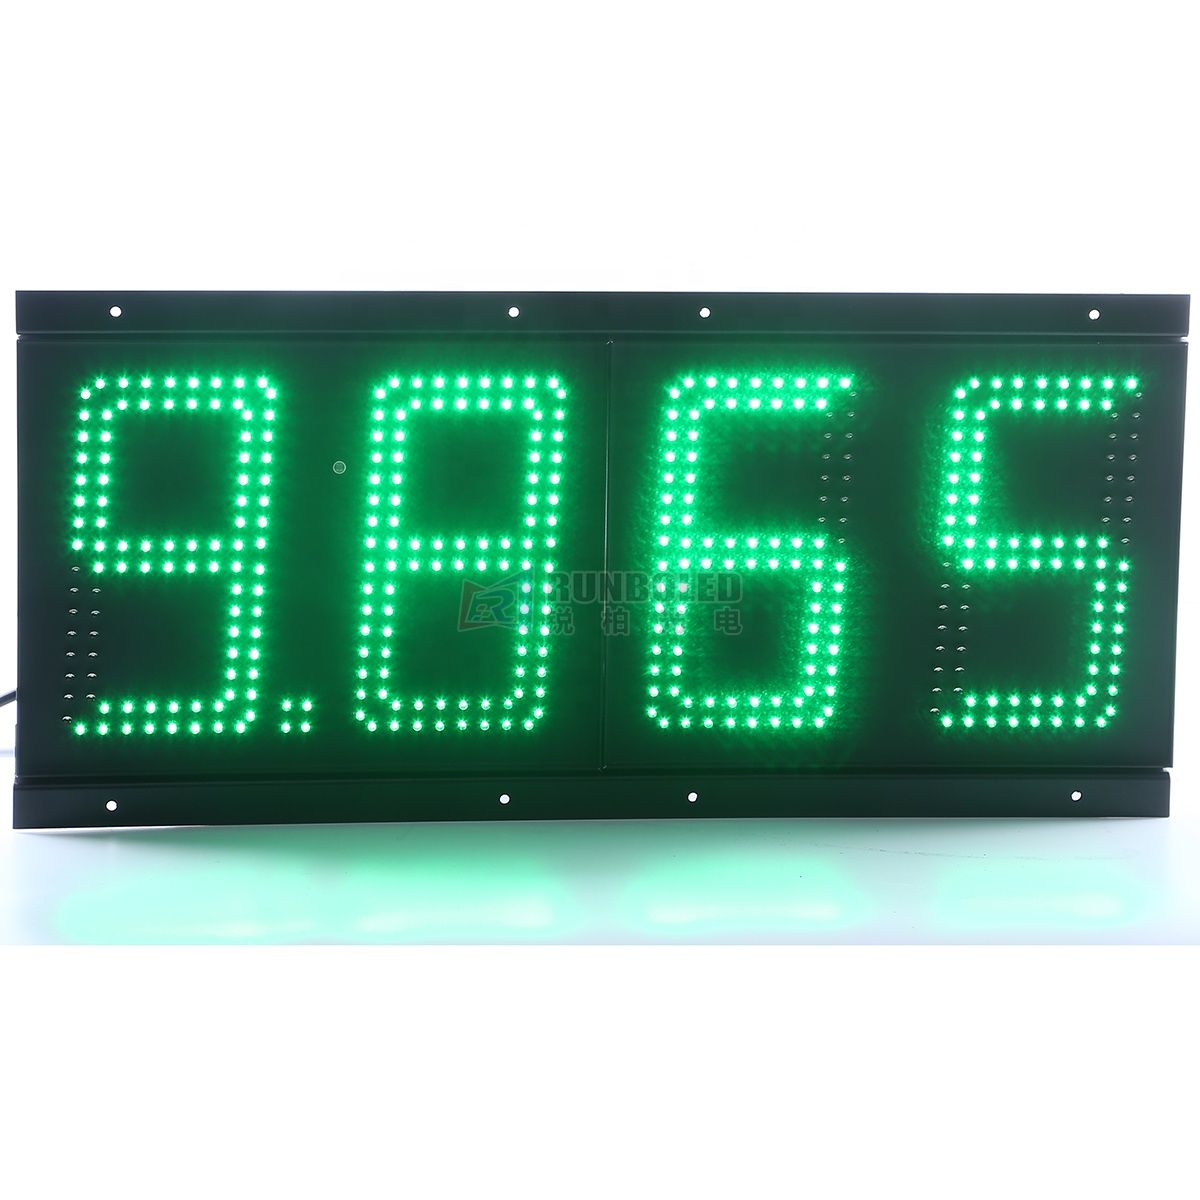 Tablero digital de gasolina de un solo color blanco / verde / azul / rojo / amarillo con señal de precio de LED de gas de 6 '' / 8 '' / 10 '' / 12 '' / 16 '' / 18 '' / 20 '' / 24 '' para publicidad en gasolineras